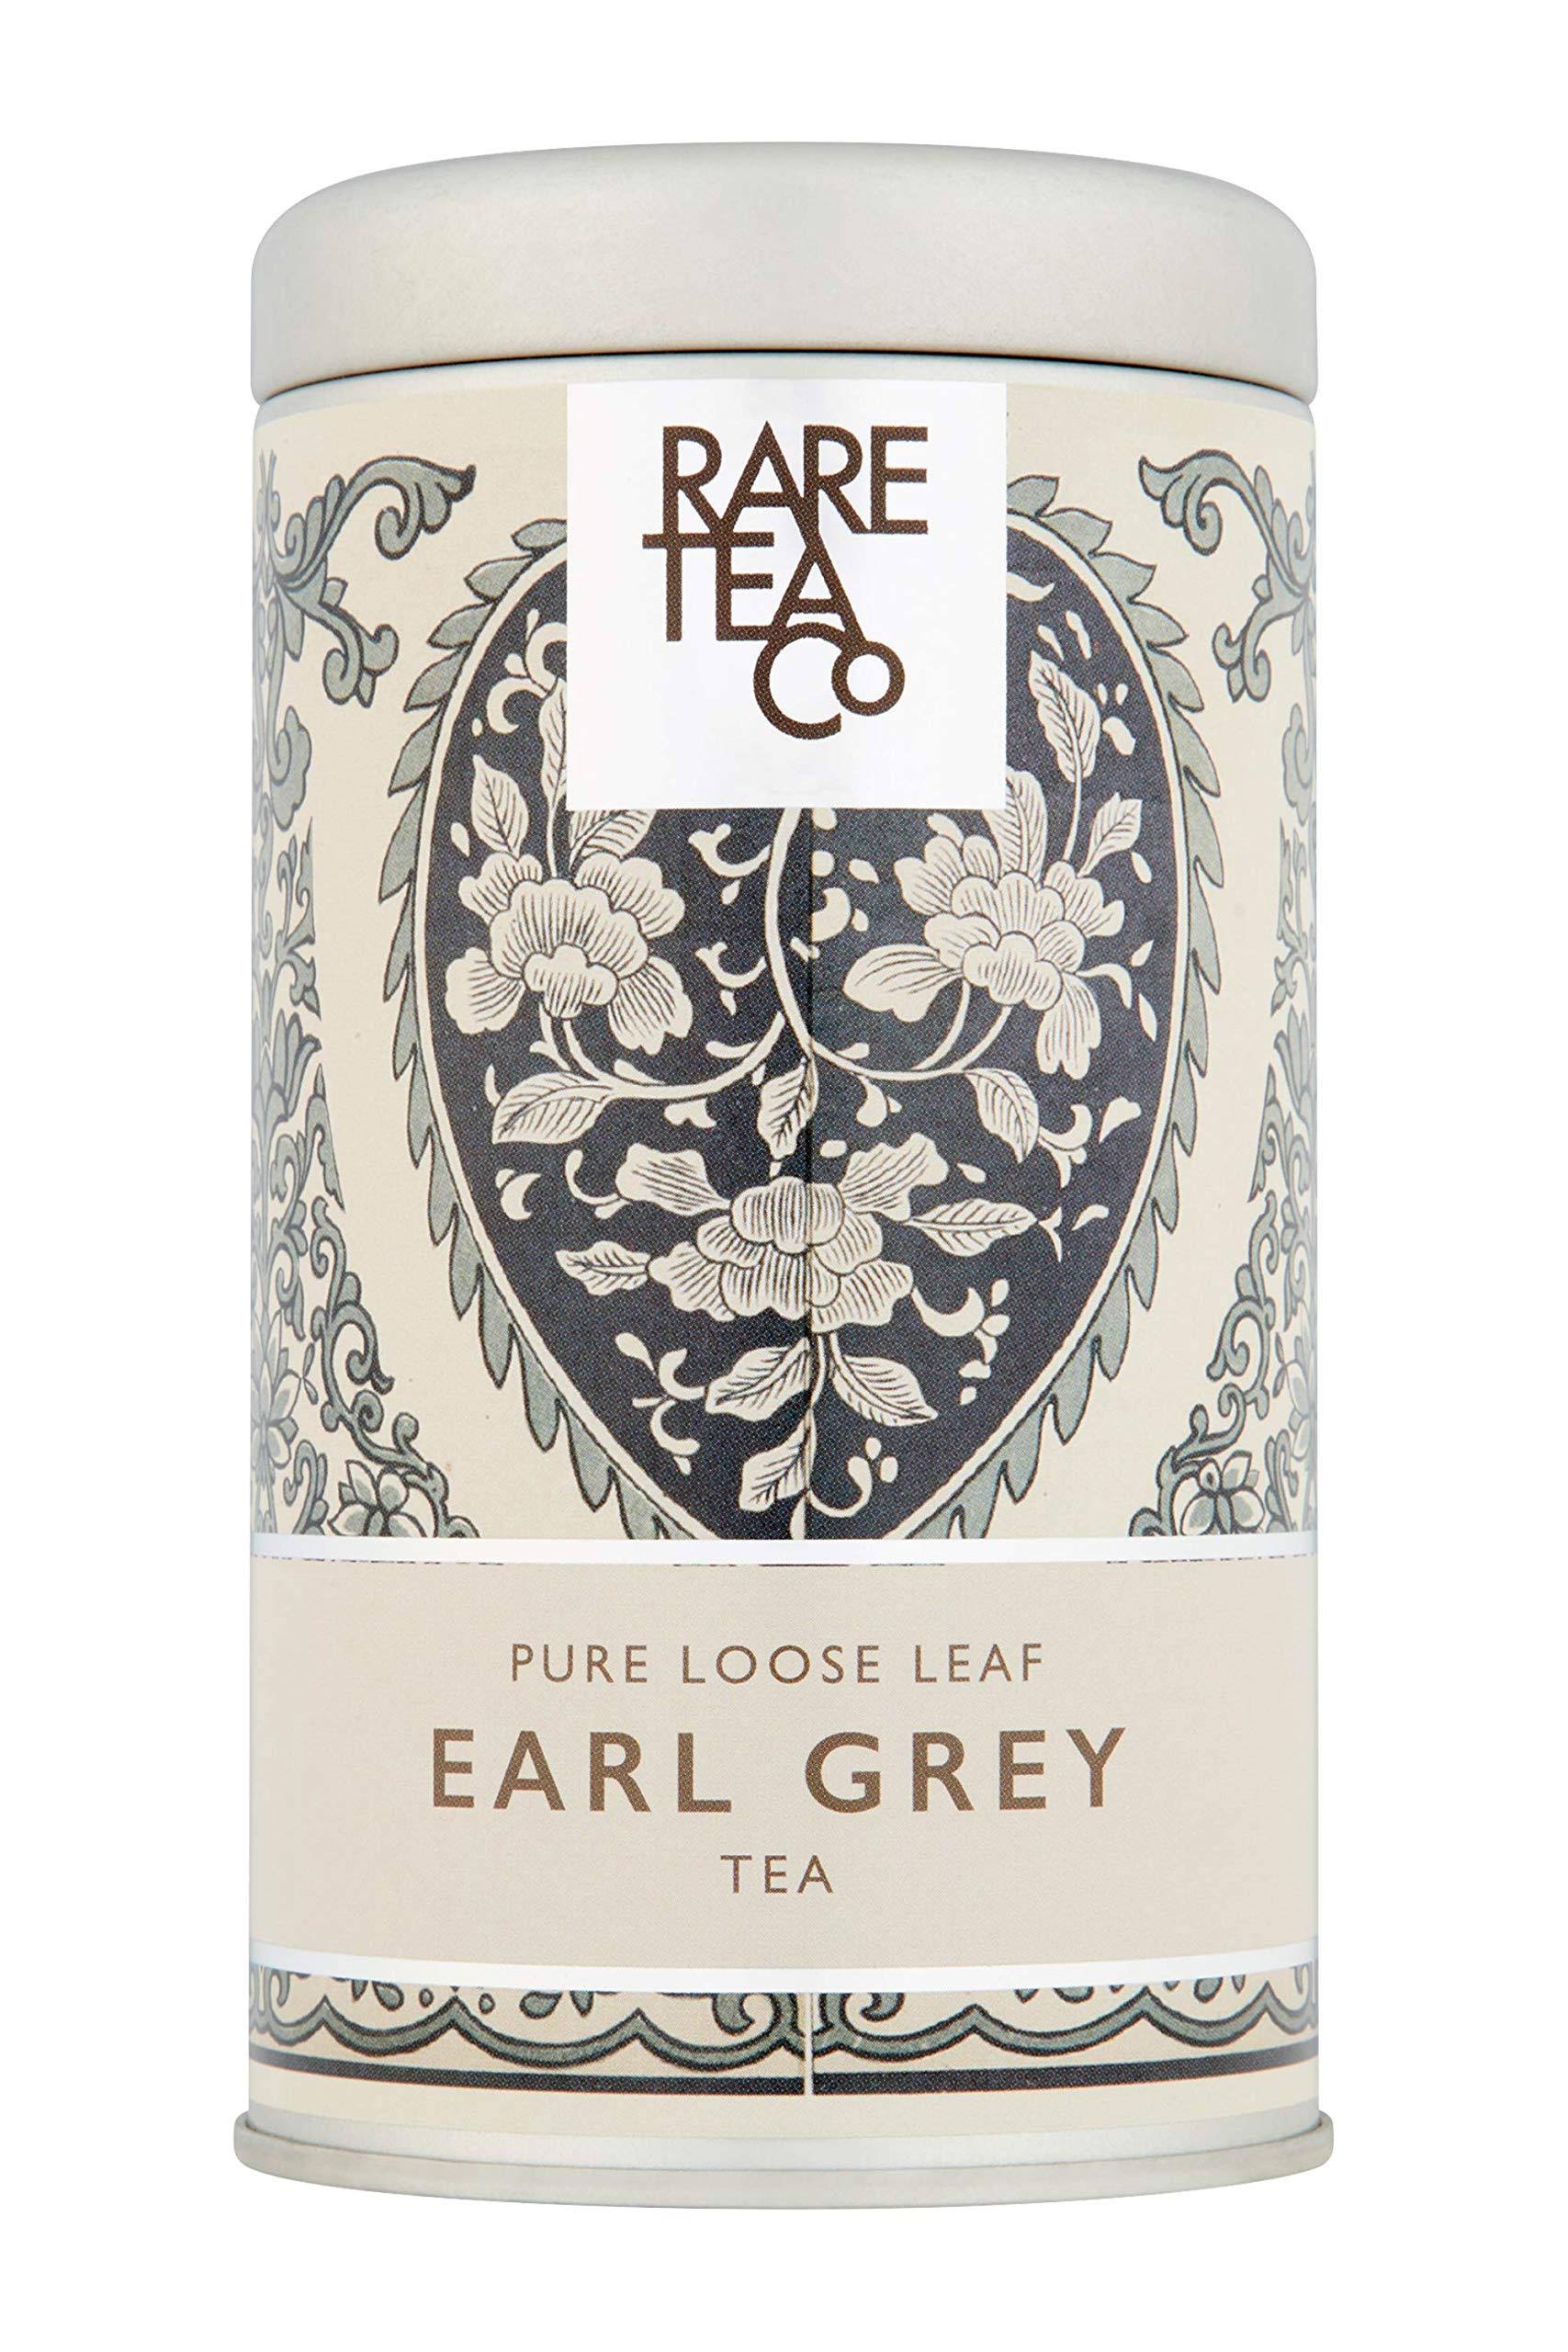 Rare Tea Company Loose Leaf Earl Grey Tea 50g Tin